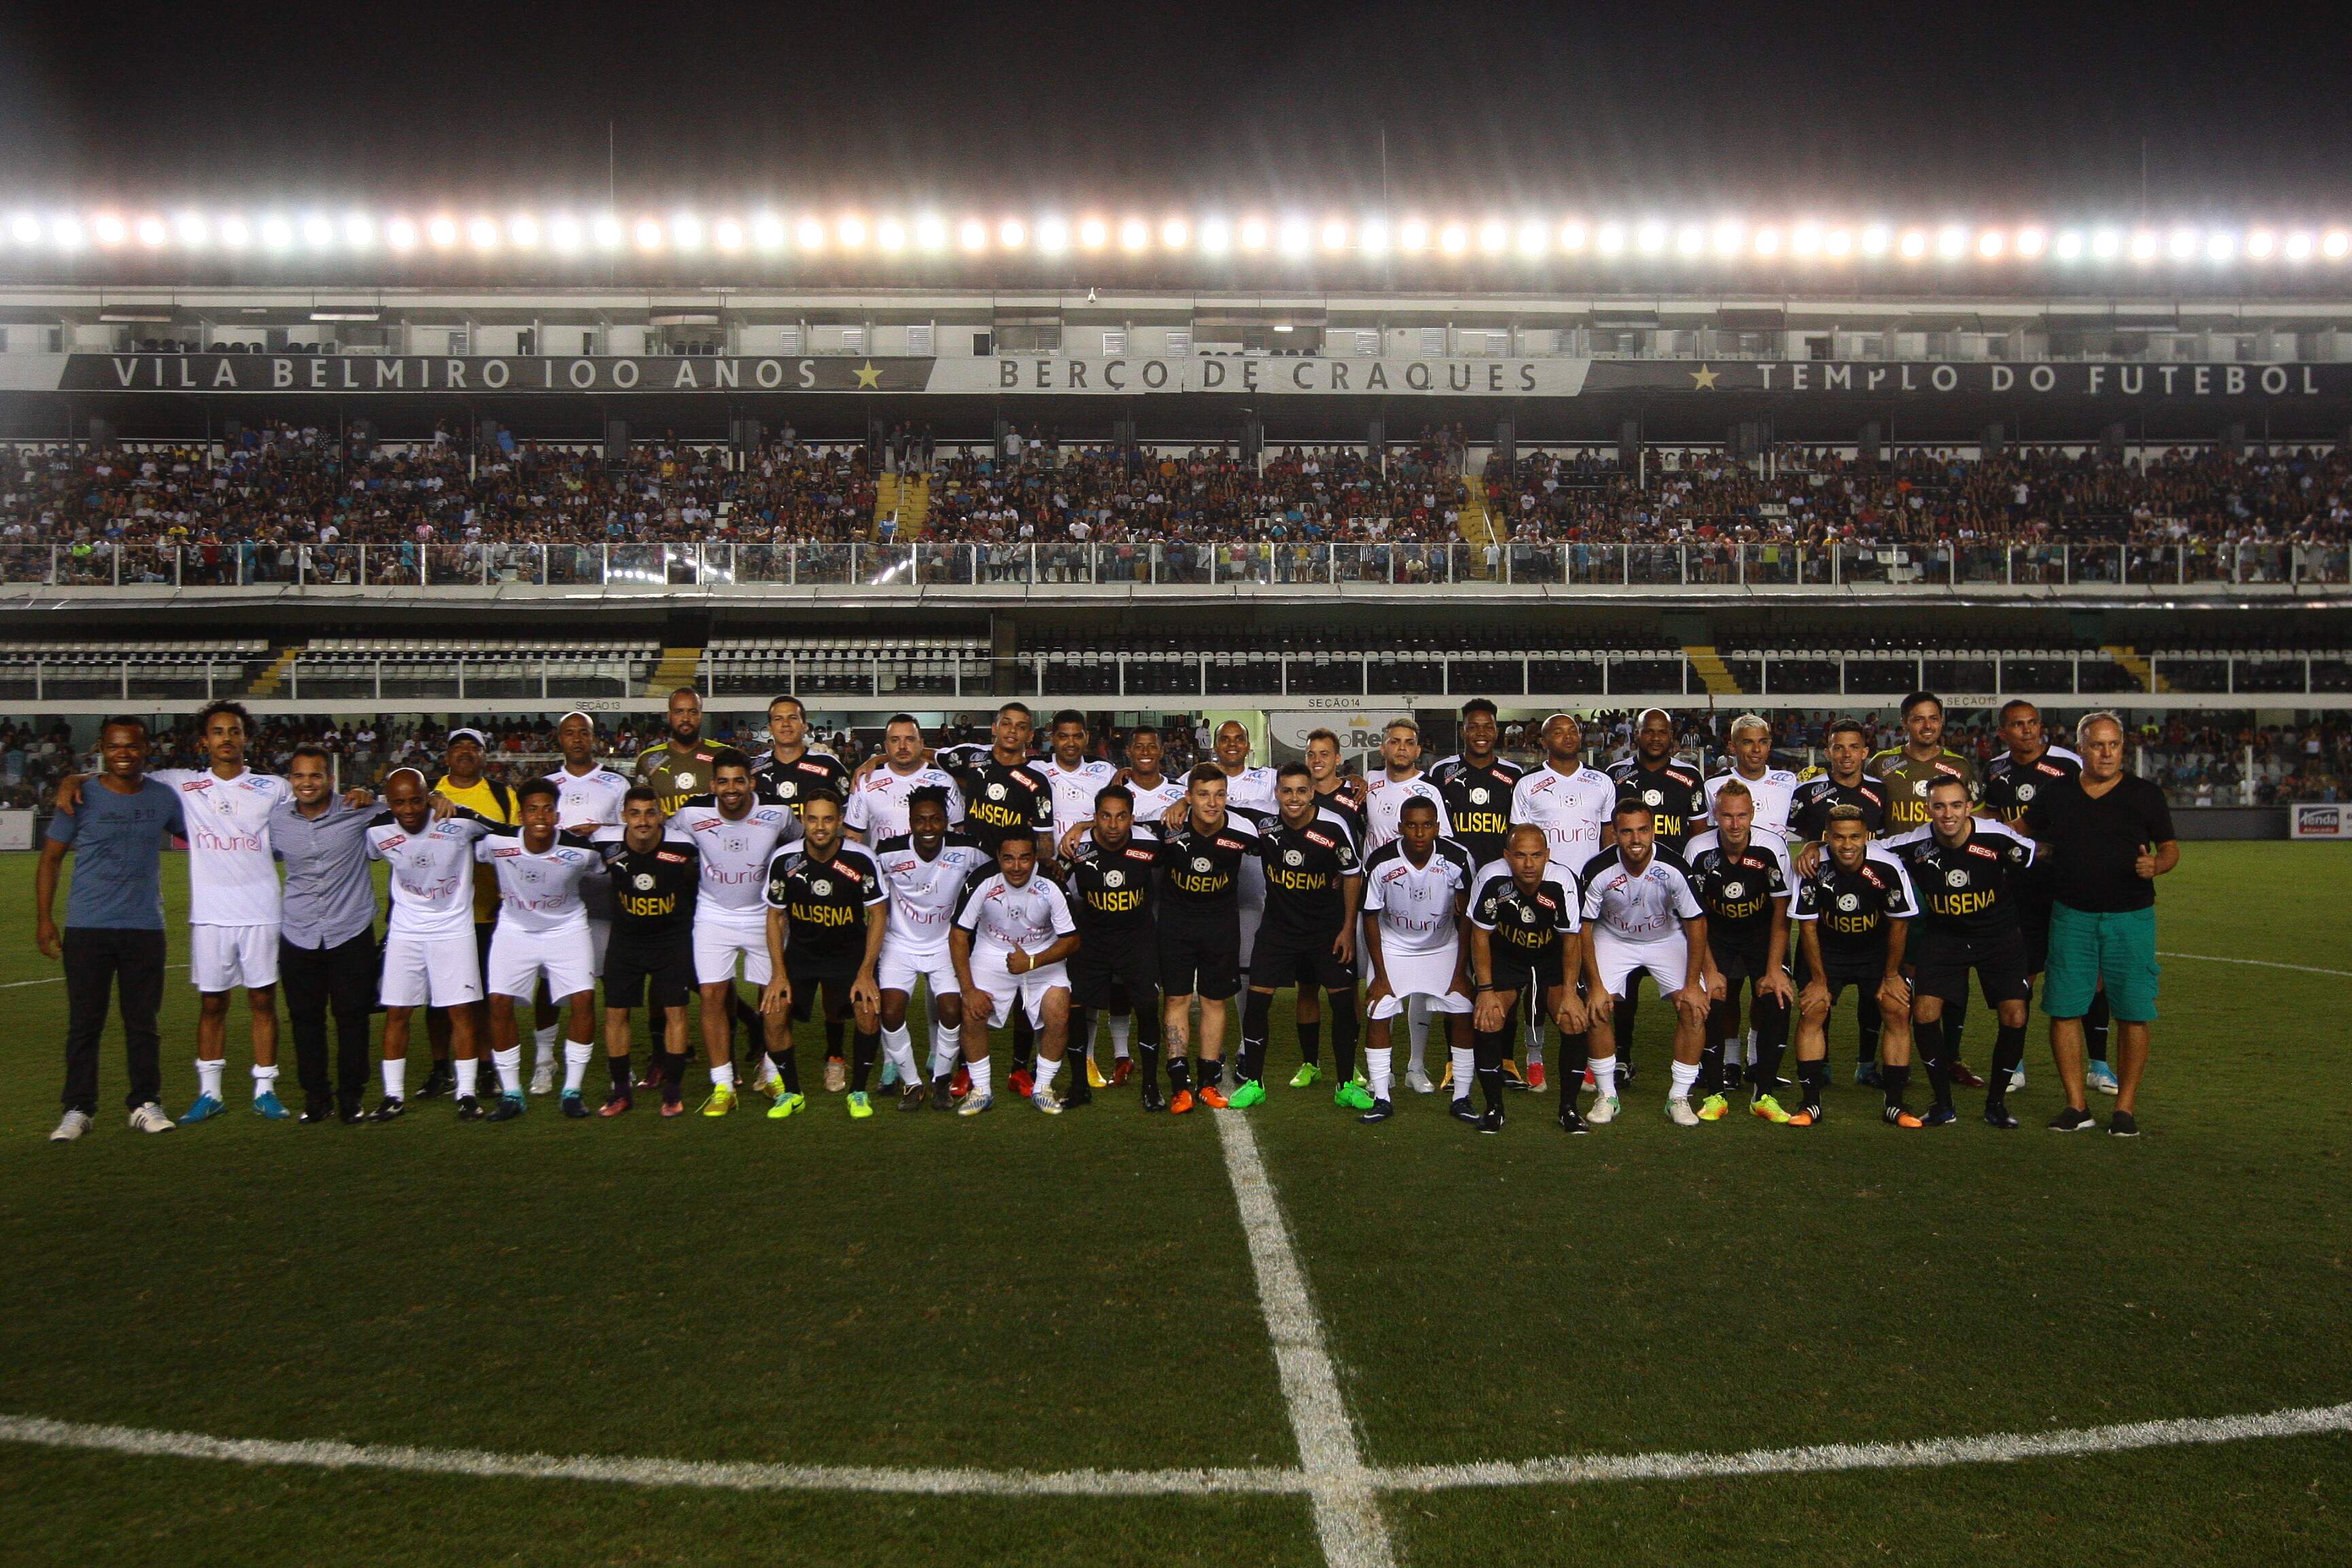 Cerca de 9 mil pessoas marcaram presença na Vila Belmiro para acompanhar o jogo